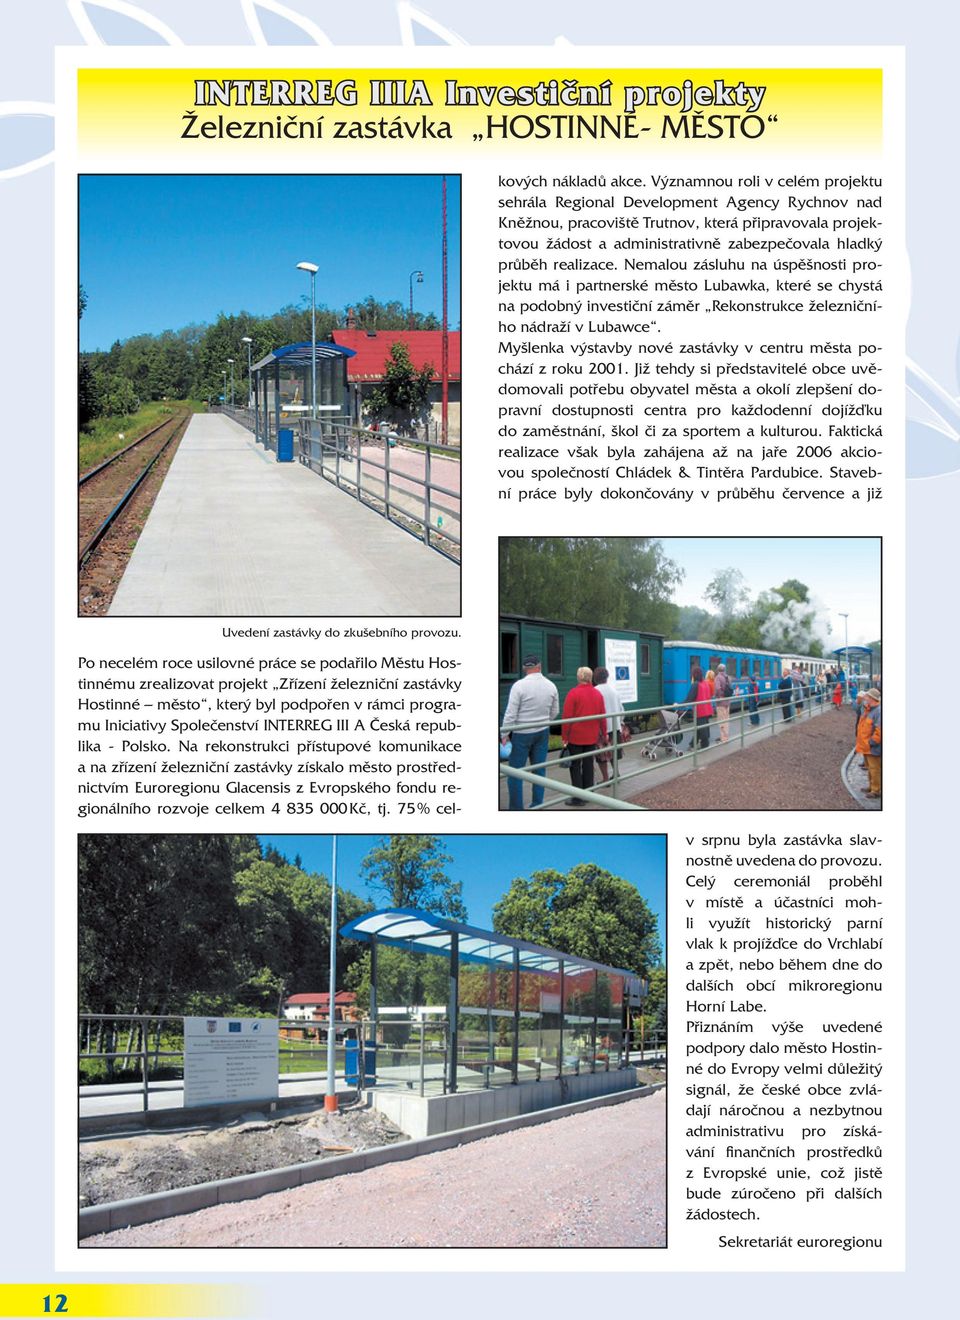 Na rekonstrukci přístupové komunikace a na zřízení železniční zastávky získalo město prostřednictvím Euroregionu Glacensis z Evropského fondu regionálního rozvoje celkem 4 835 000 Kč, tj.